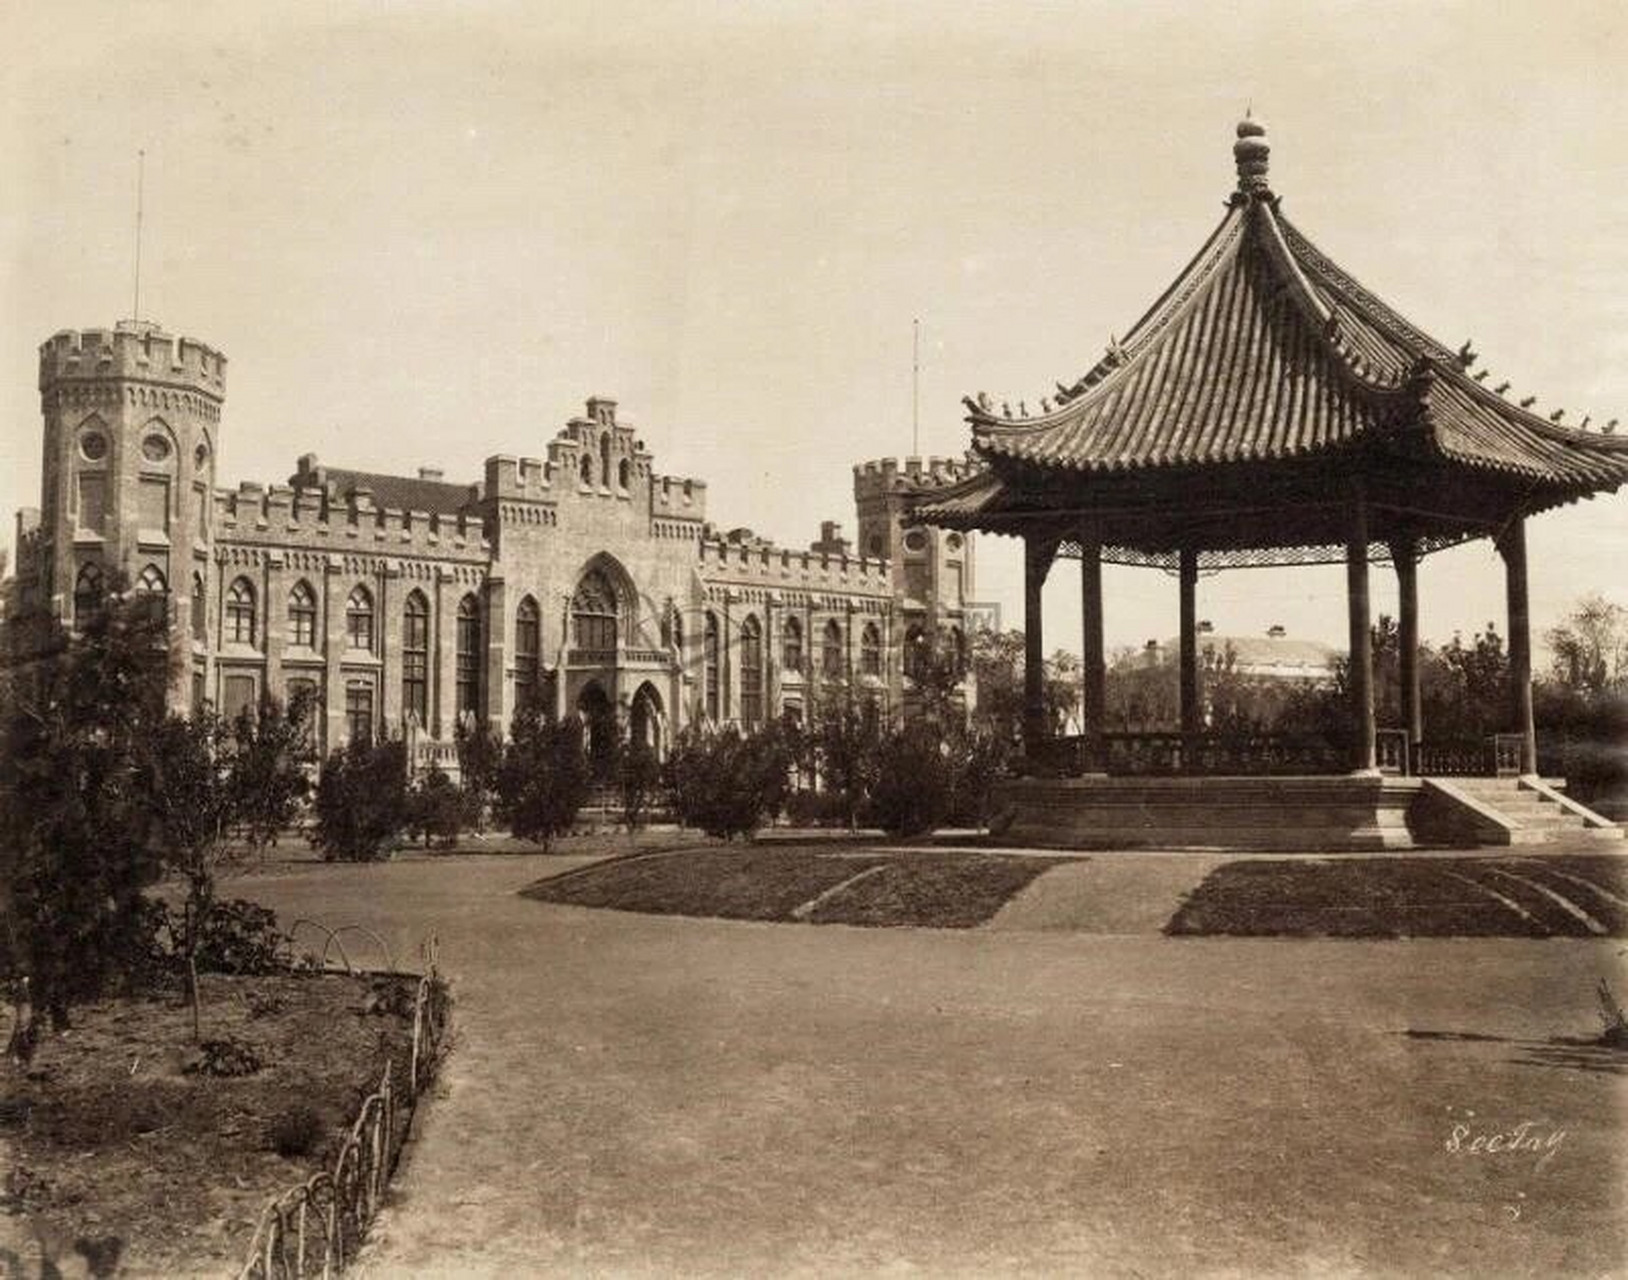 天津戈登堂又称天津英租界工部局大楼,始建于1890年,是19世纪天津体量